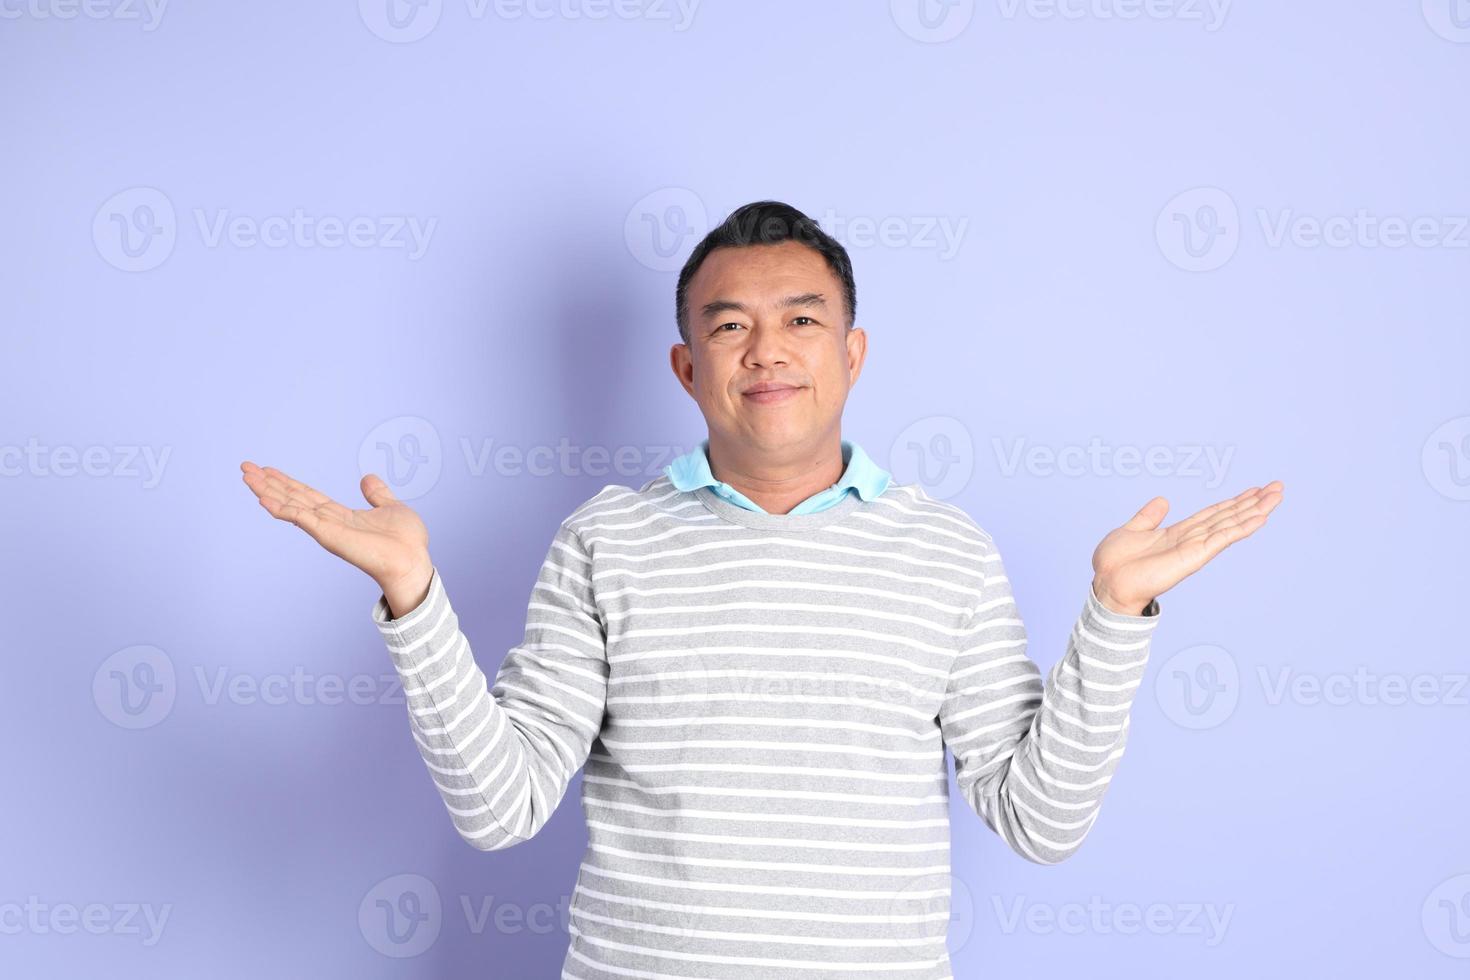 volwassen Aziatische man foto